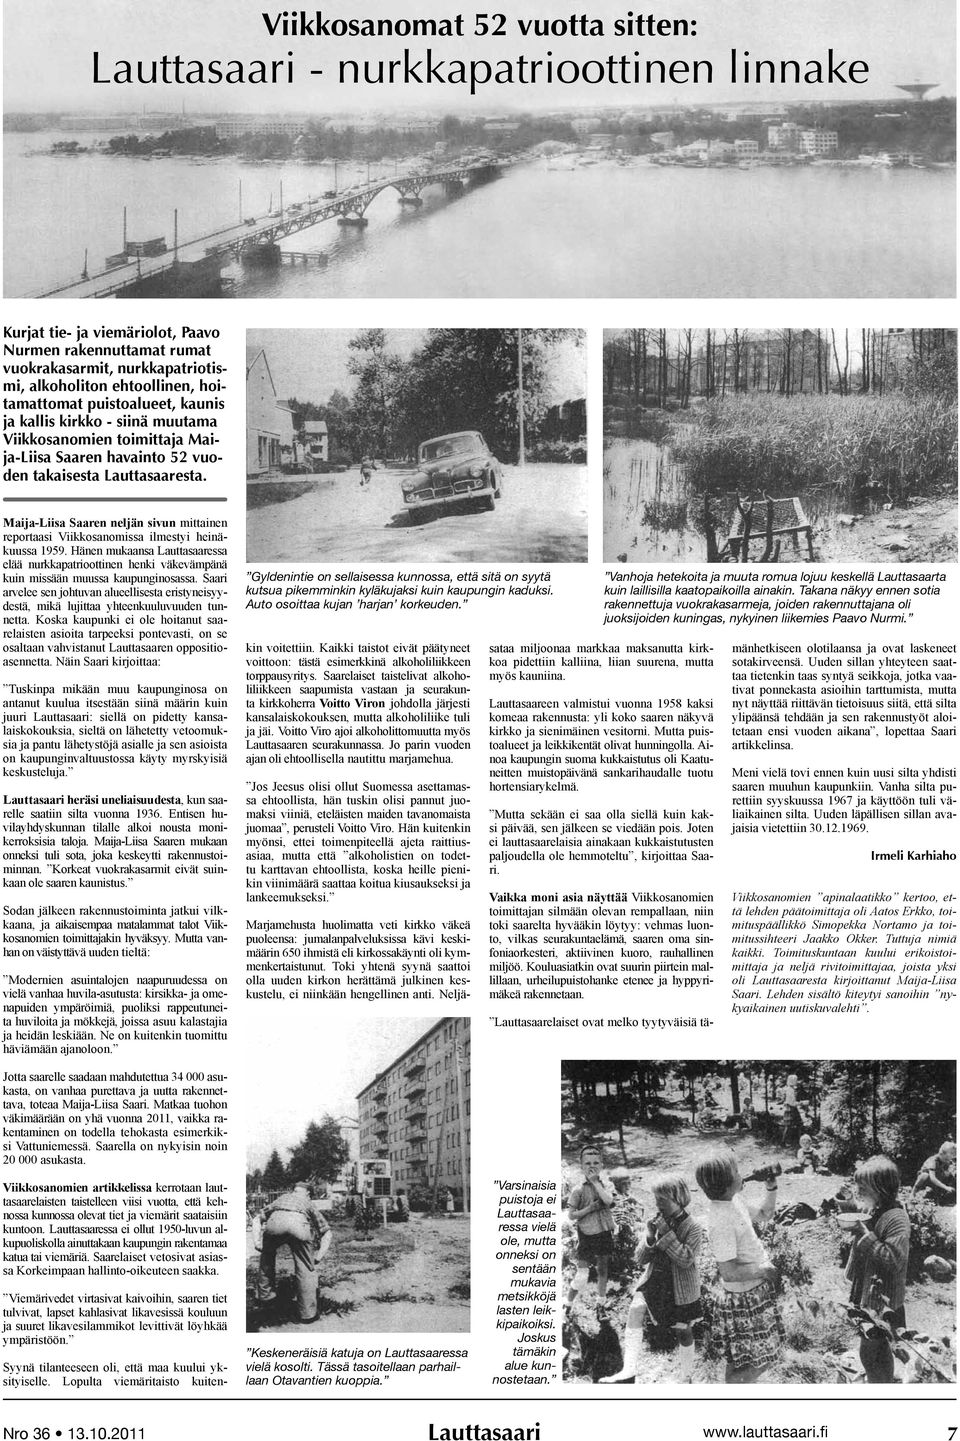 Maija-Liisa Saaren neljän sivun mittainen reportaasi Viikkosanomissa ilmestyi hei näkuussa 1959.